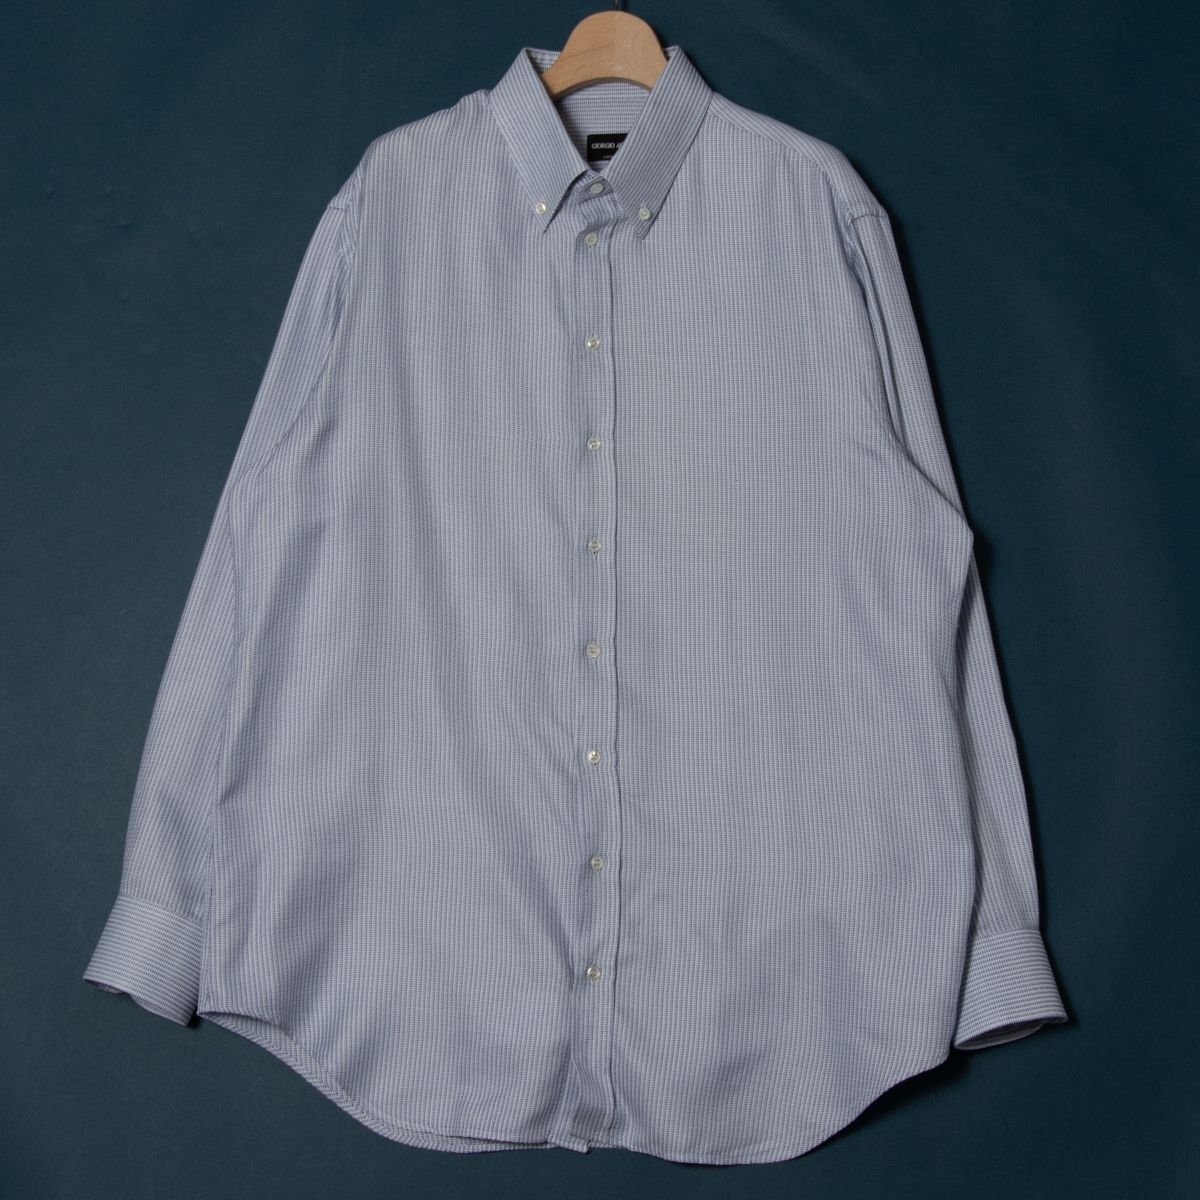 [1 иен старт ]GIORGIO ARMANIjoru geo Armani длинный рукав кнопка down рубашка tops хлопок 100% высокий бренд общий рисунок белый × темно-синий 43 Италия производства 